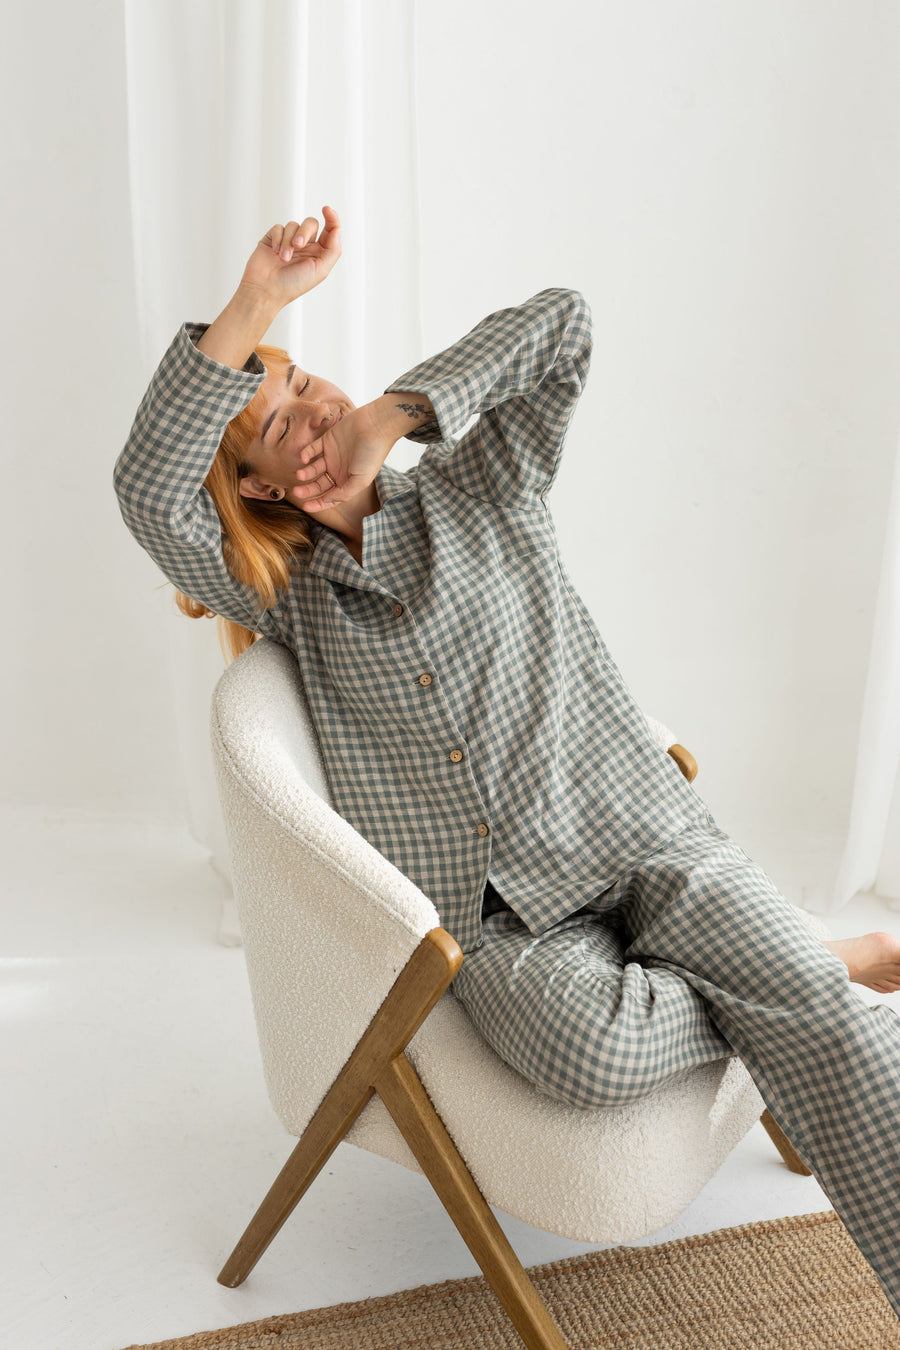 Gray green ginghan linen pajama set